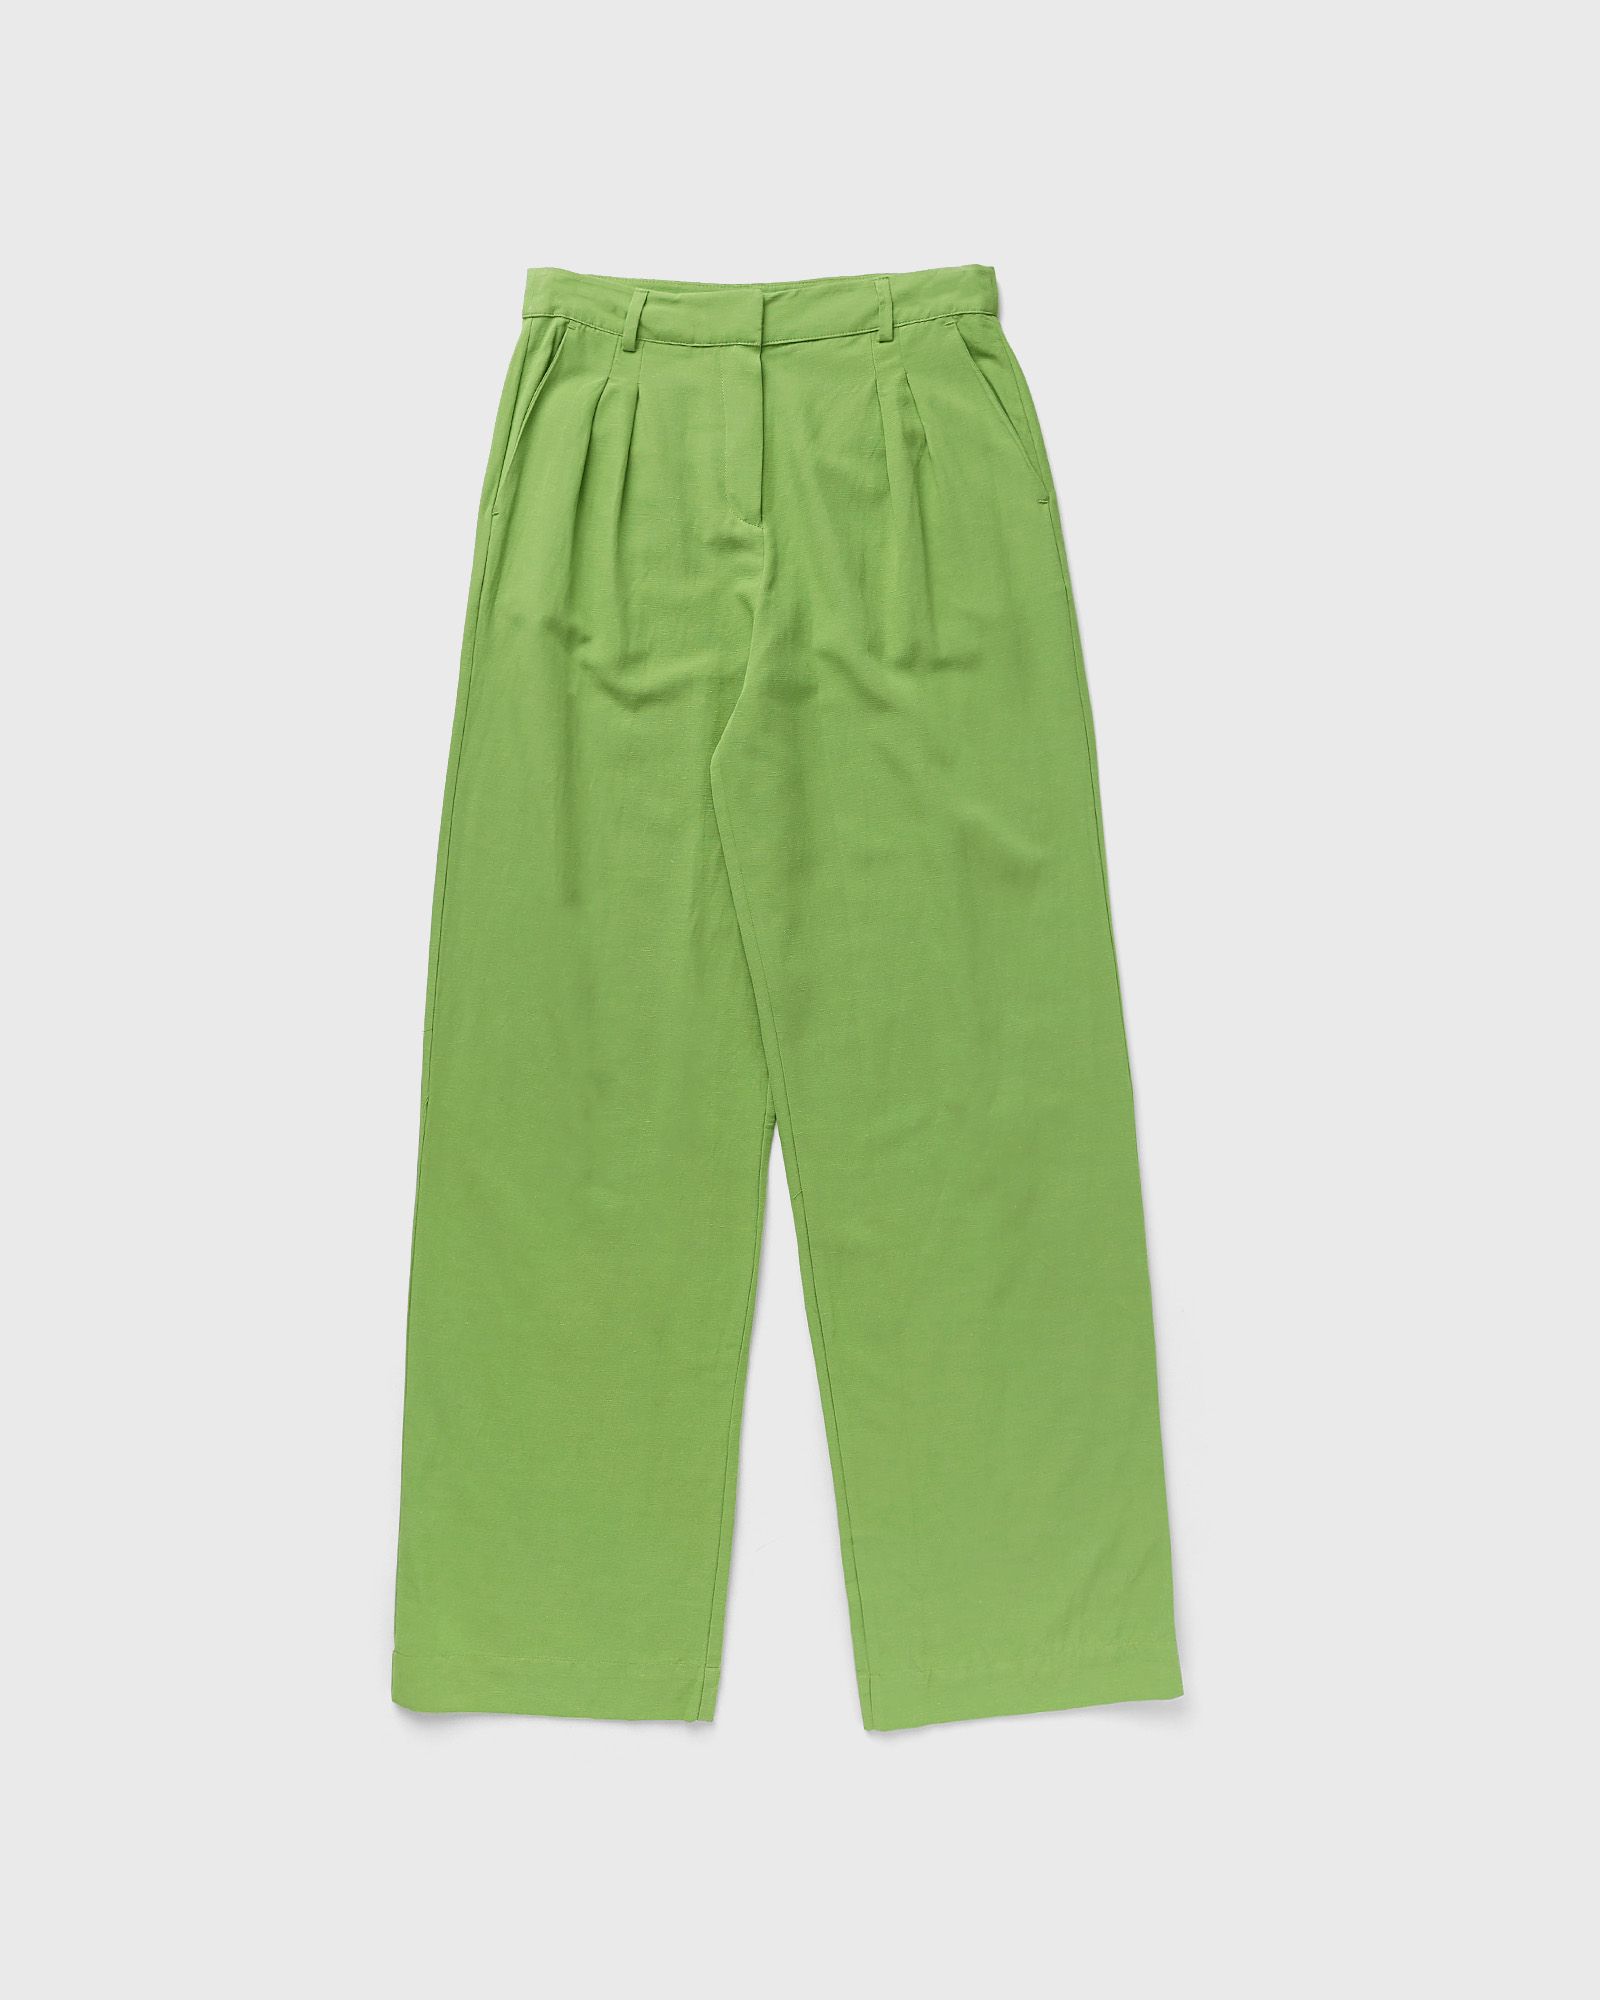 Envii - enline pants 6903 women casual pants green in größe:xs